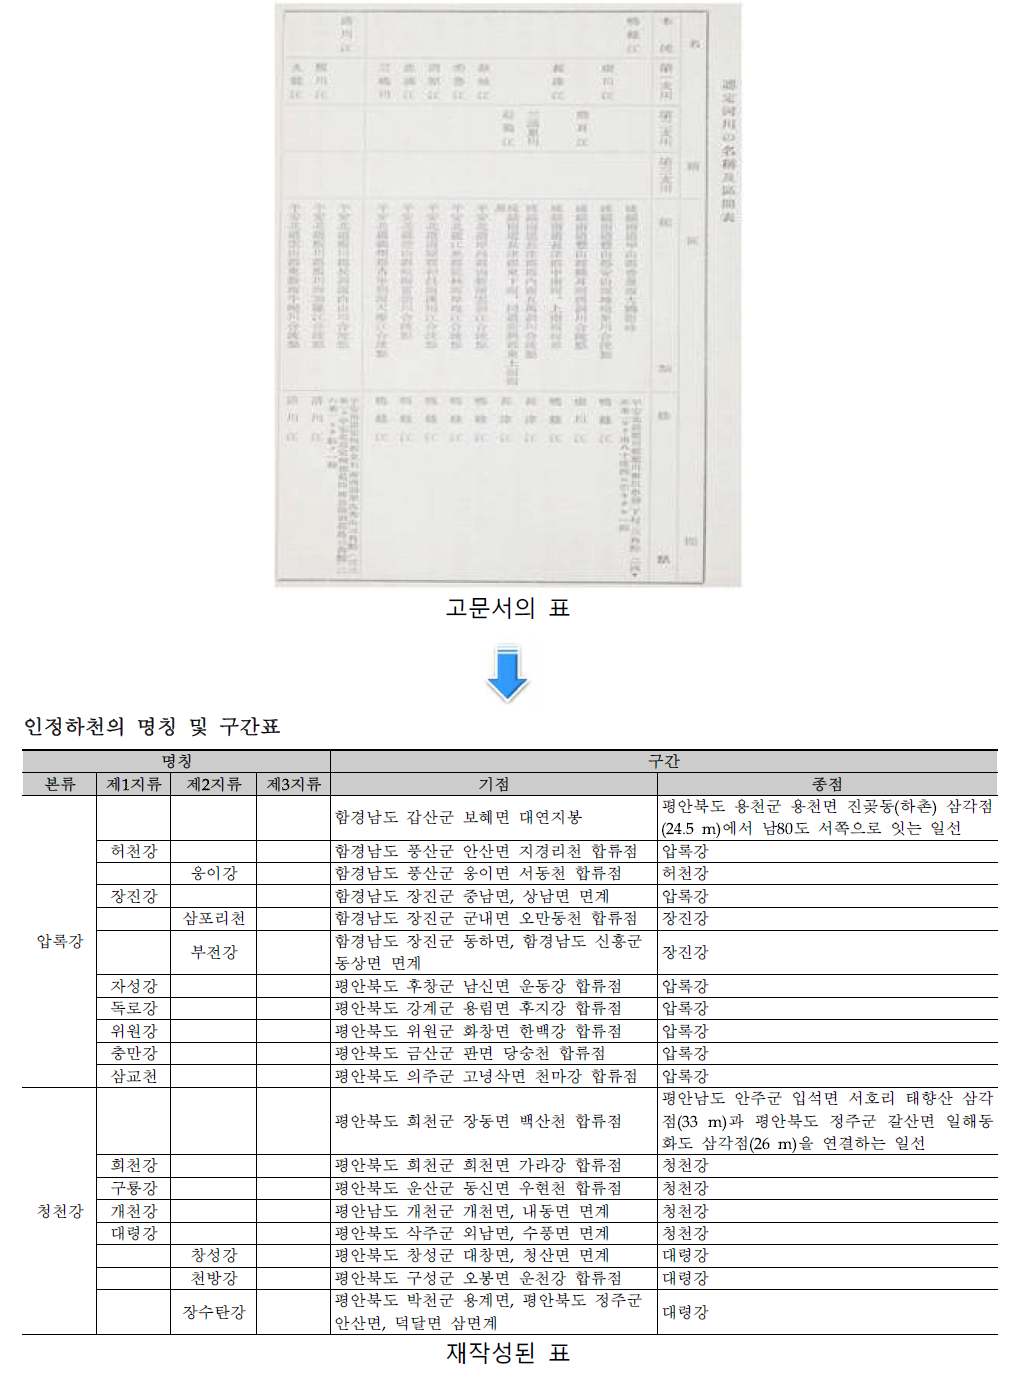 조선 하천 조사서(조선총독부, 1929)의 인정하천의 명칭 및 구간표의 번역작업